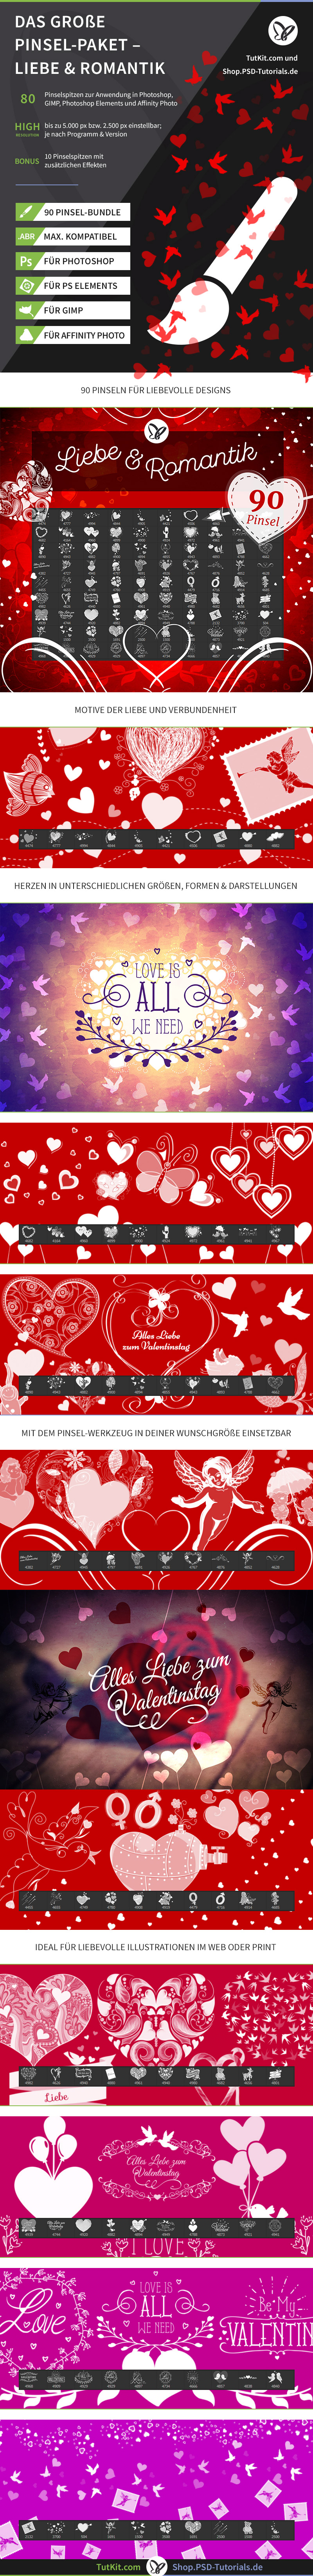 Pinsel und Brushes für Photoshop zum Thema: Liebe, Herzen, Romantik, Valentinstag, Liebesherzen und Zweisamkeit